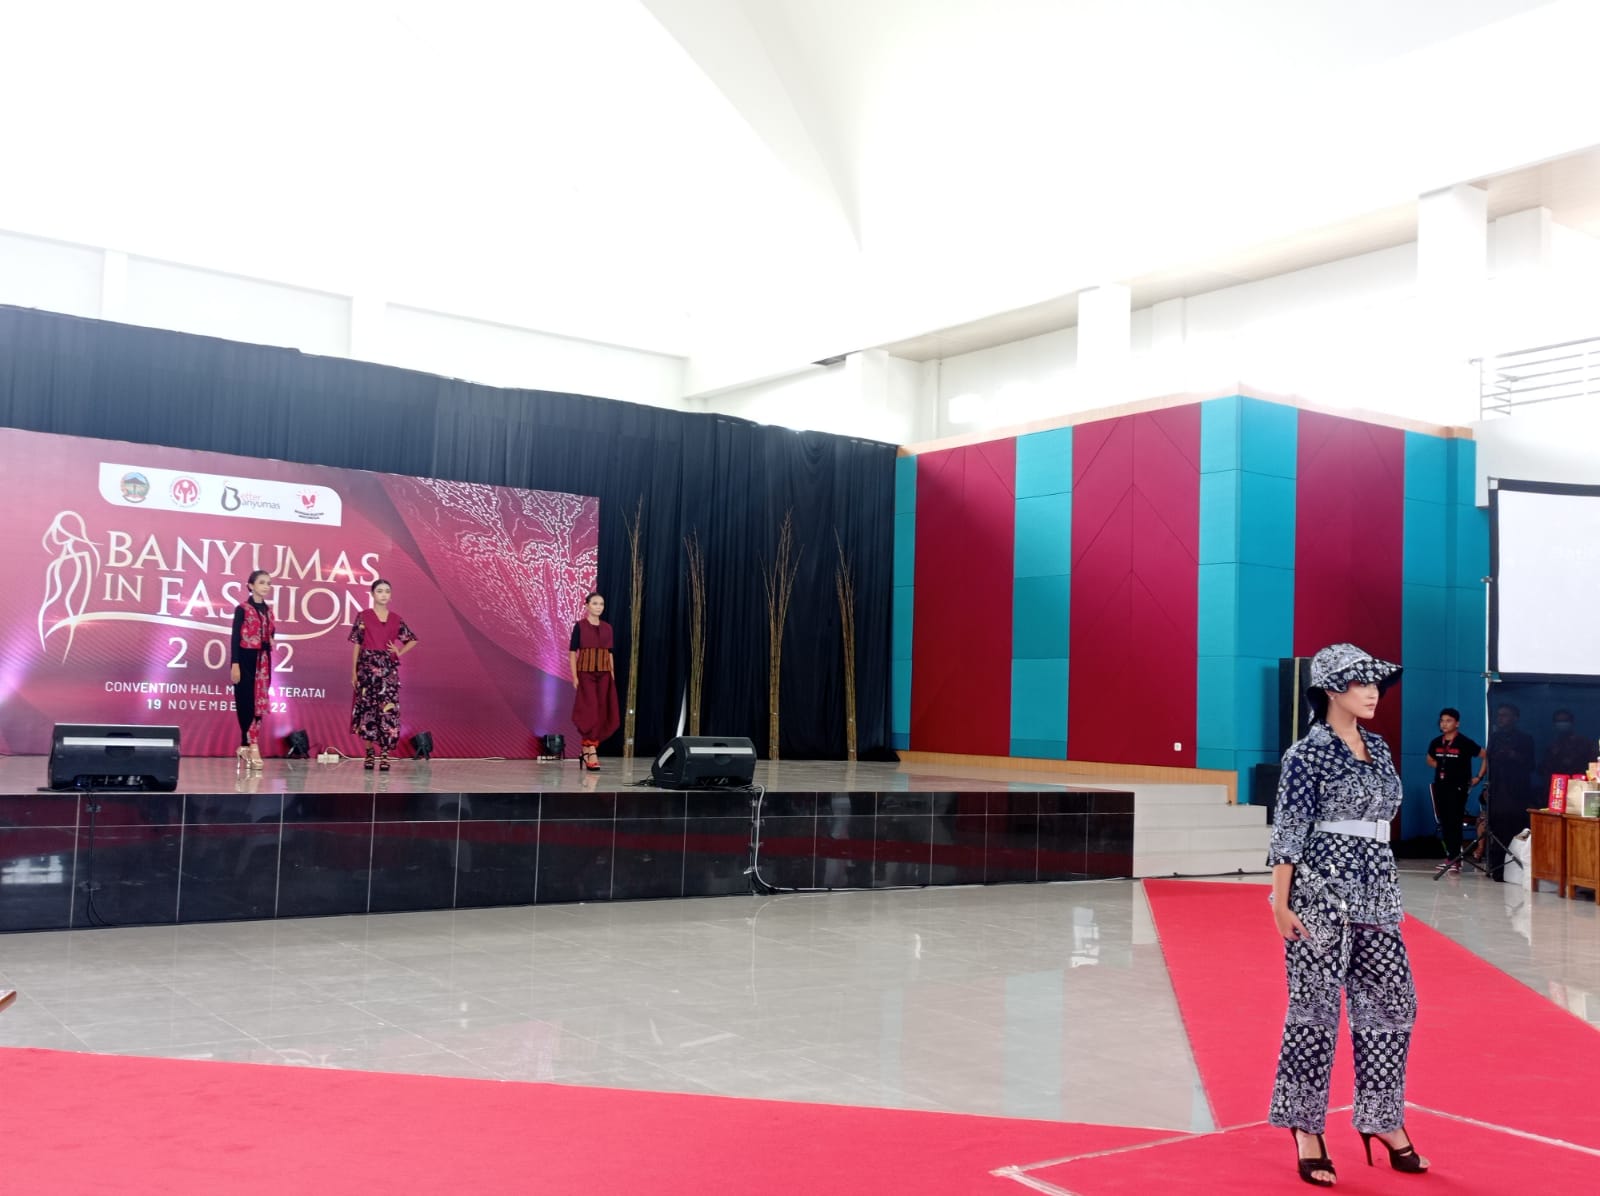 Promosikan Batik dan Tenun Khas Banyumas Lewat 'Banyumas In Fashion 2022' di Menara Teratai Purwokerto